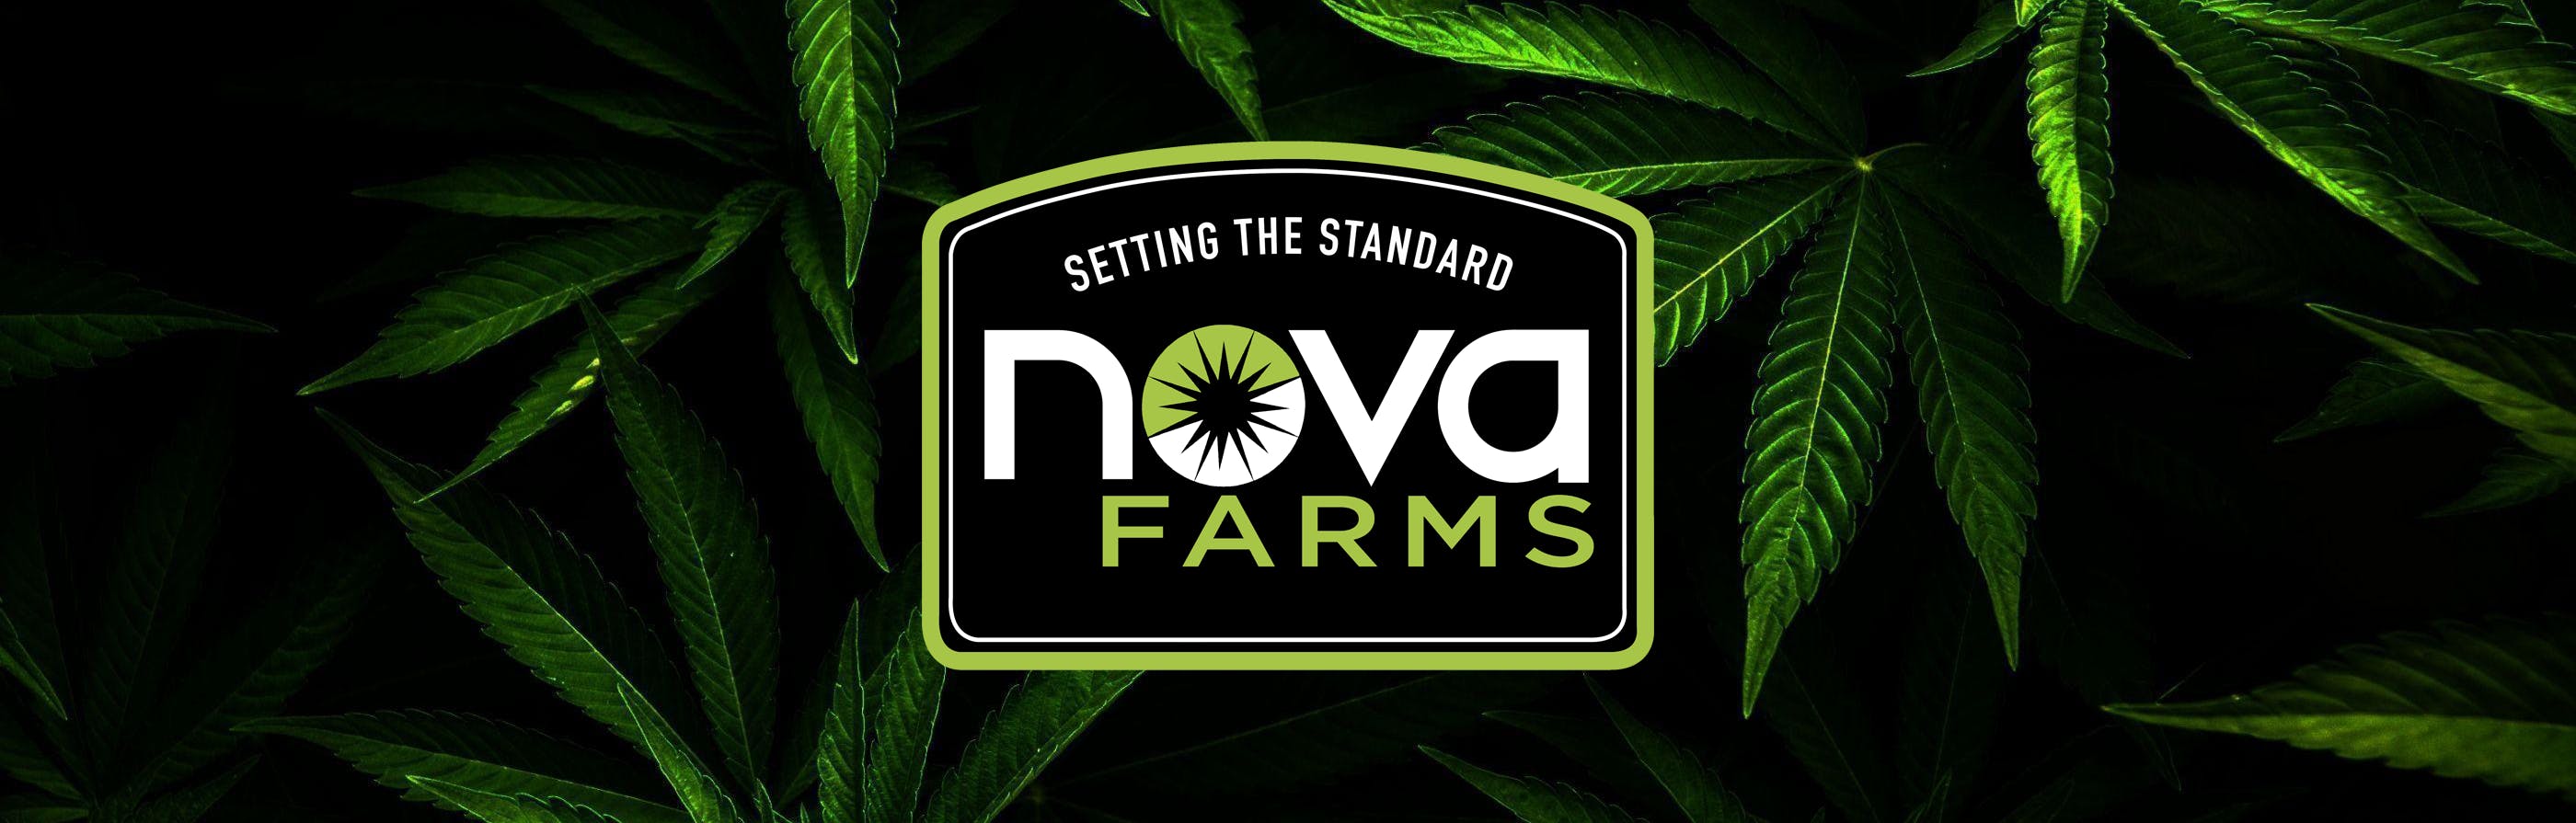 Nova Farms Attleboro, MA Dispensary Leafly